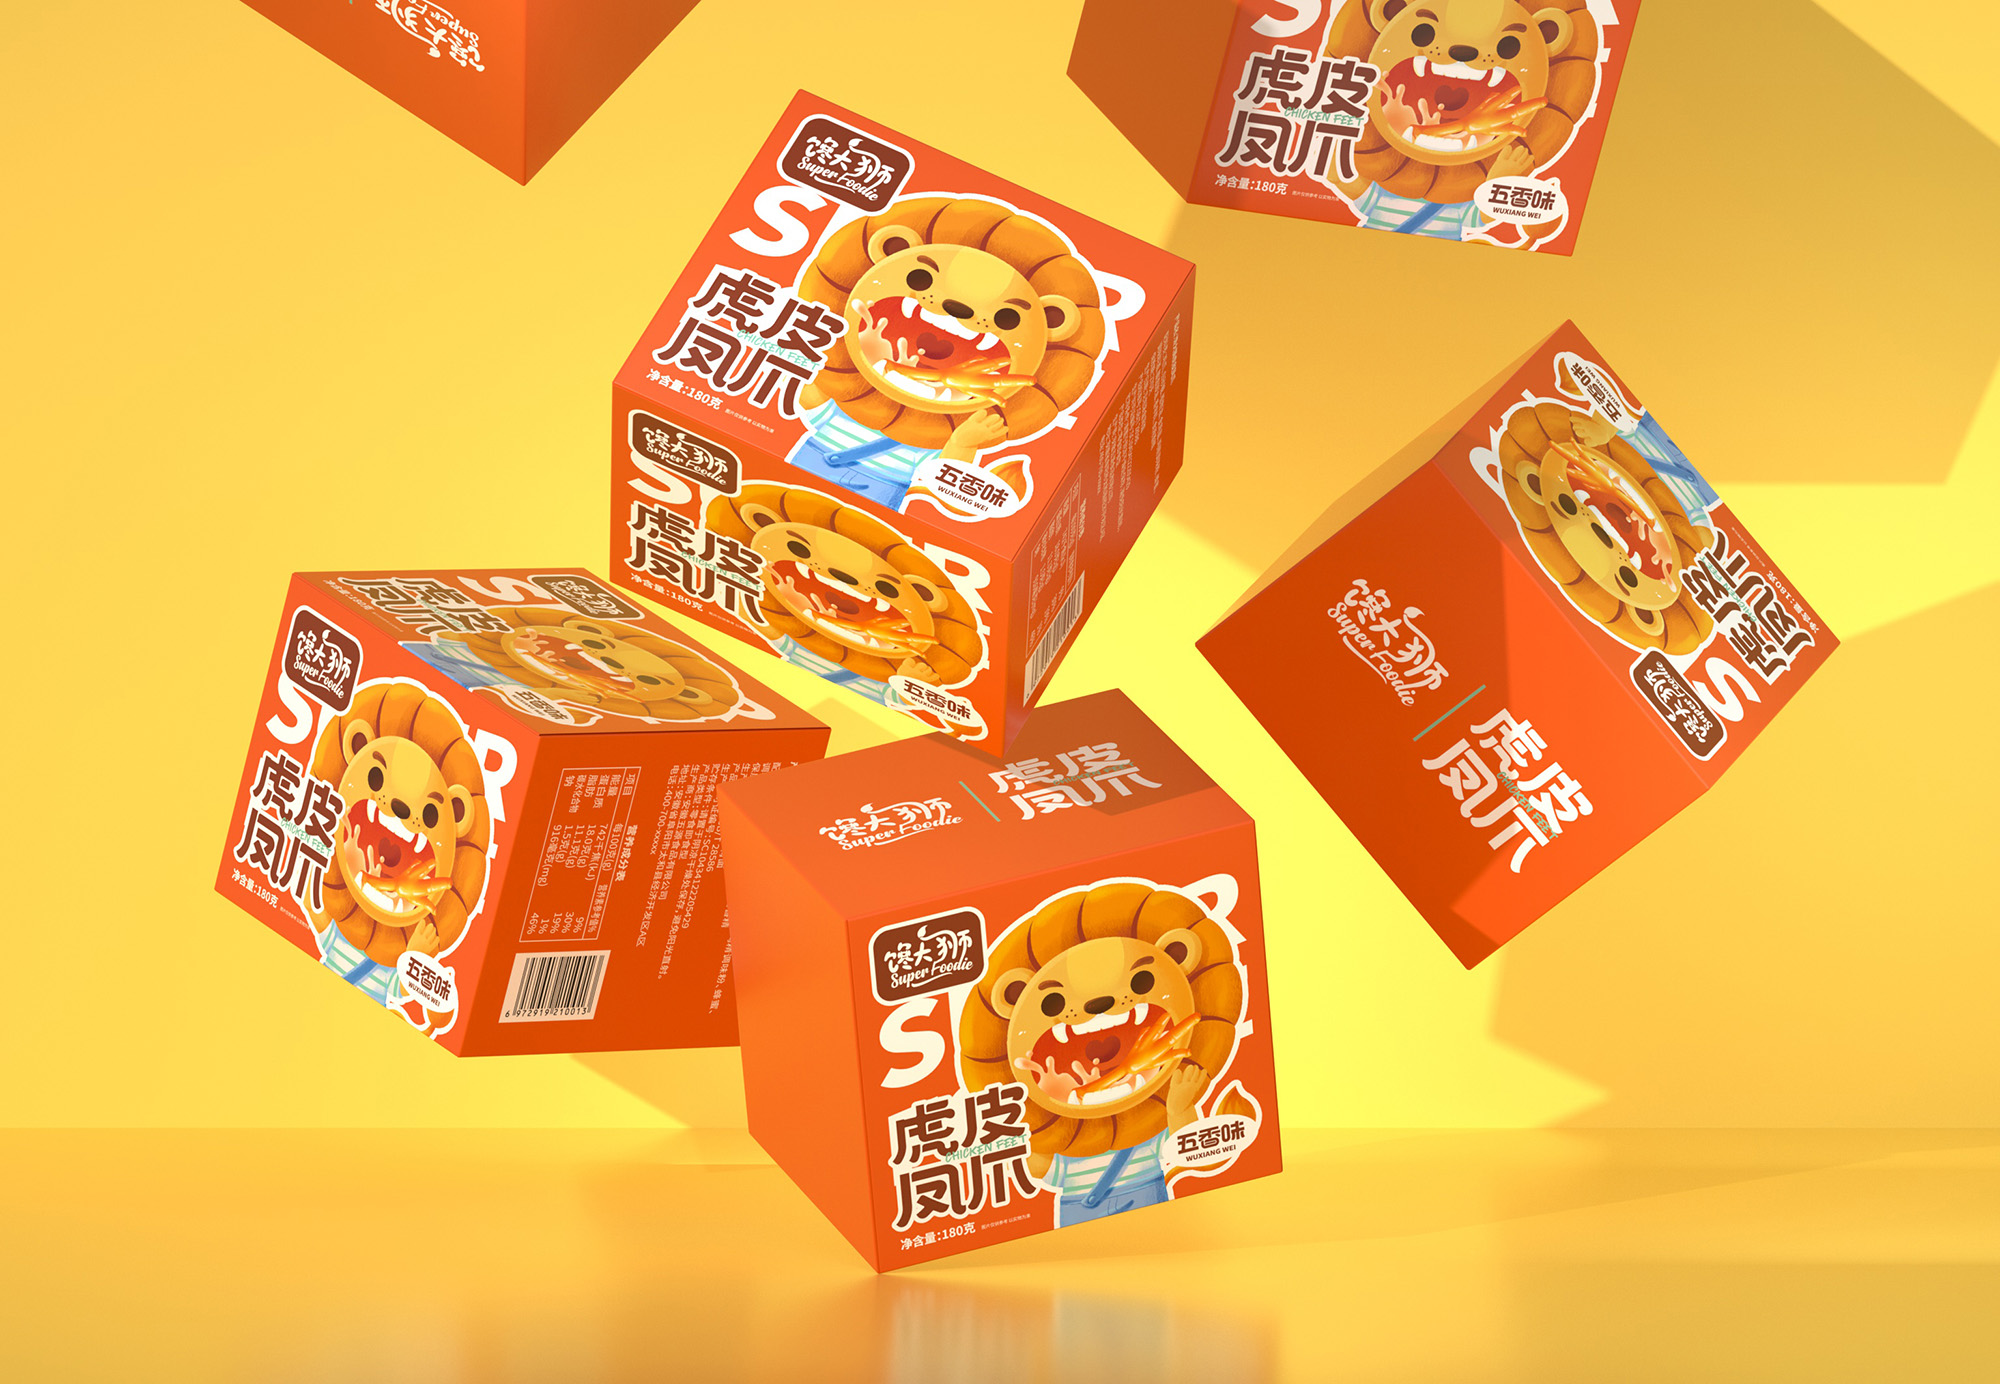 尚智×永辉超市 | 馋大狮肉食系列包装设计